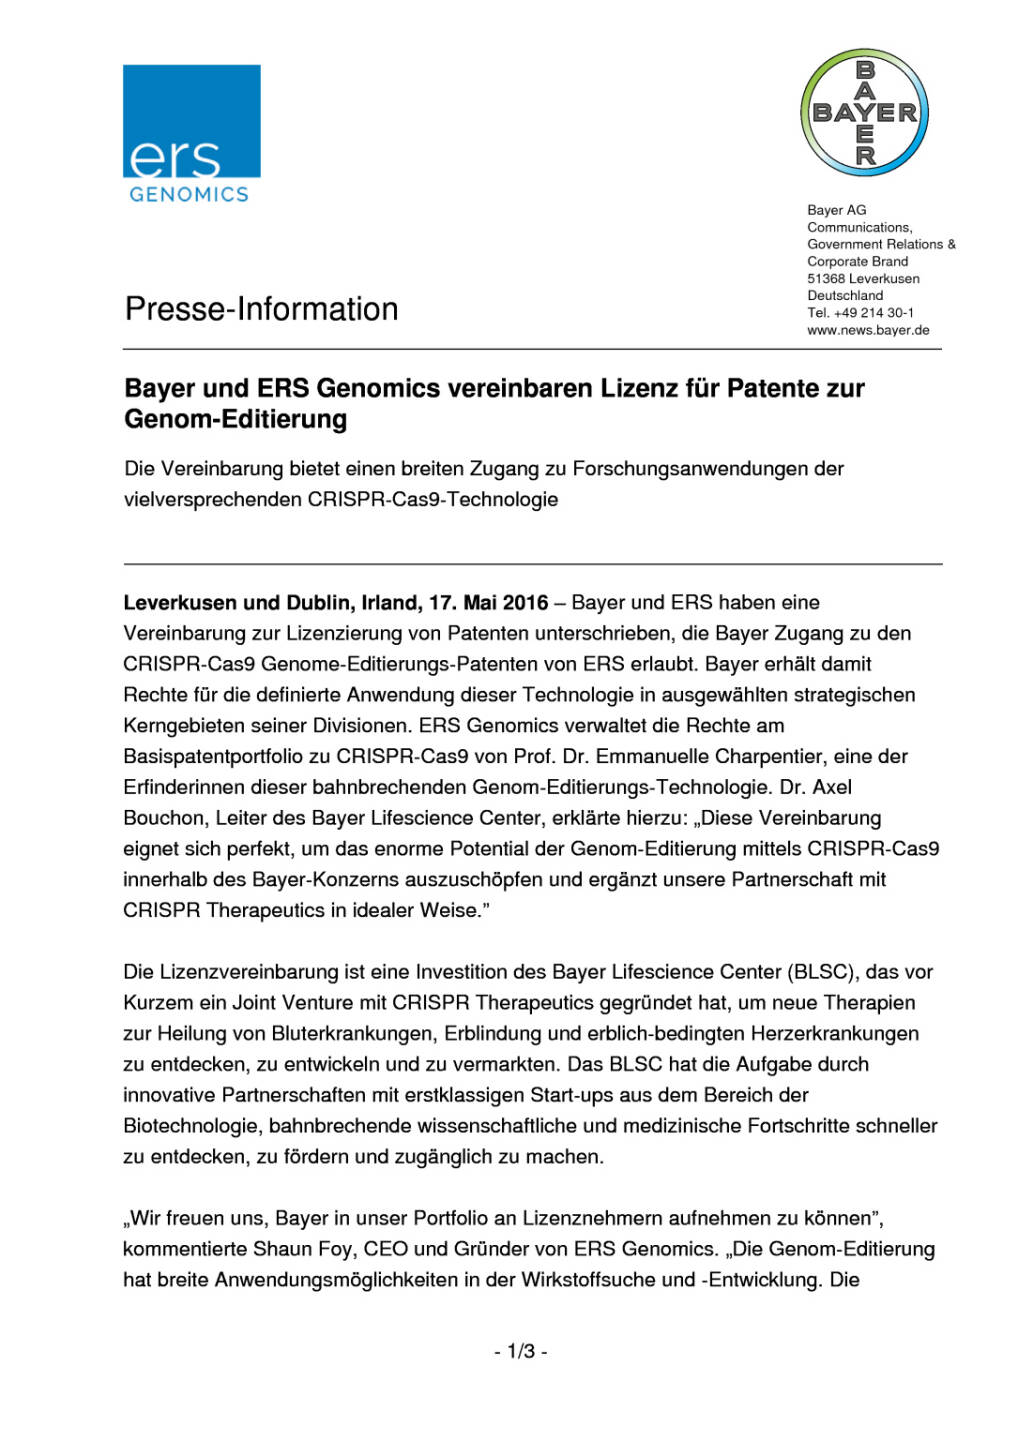 Bayer und ERS Genomics vereinbaren Lizenz für Patente zur Genom-Editierung , Seite 1/3, komplettes Dokument unter http://boerse-social.com/static/uploads/file_1070_bayer_und_ers_genomics_vereinbaren_lizenz_fur_patente_zur_genom-editierung.pdf